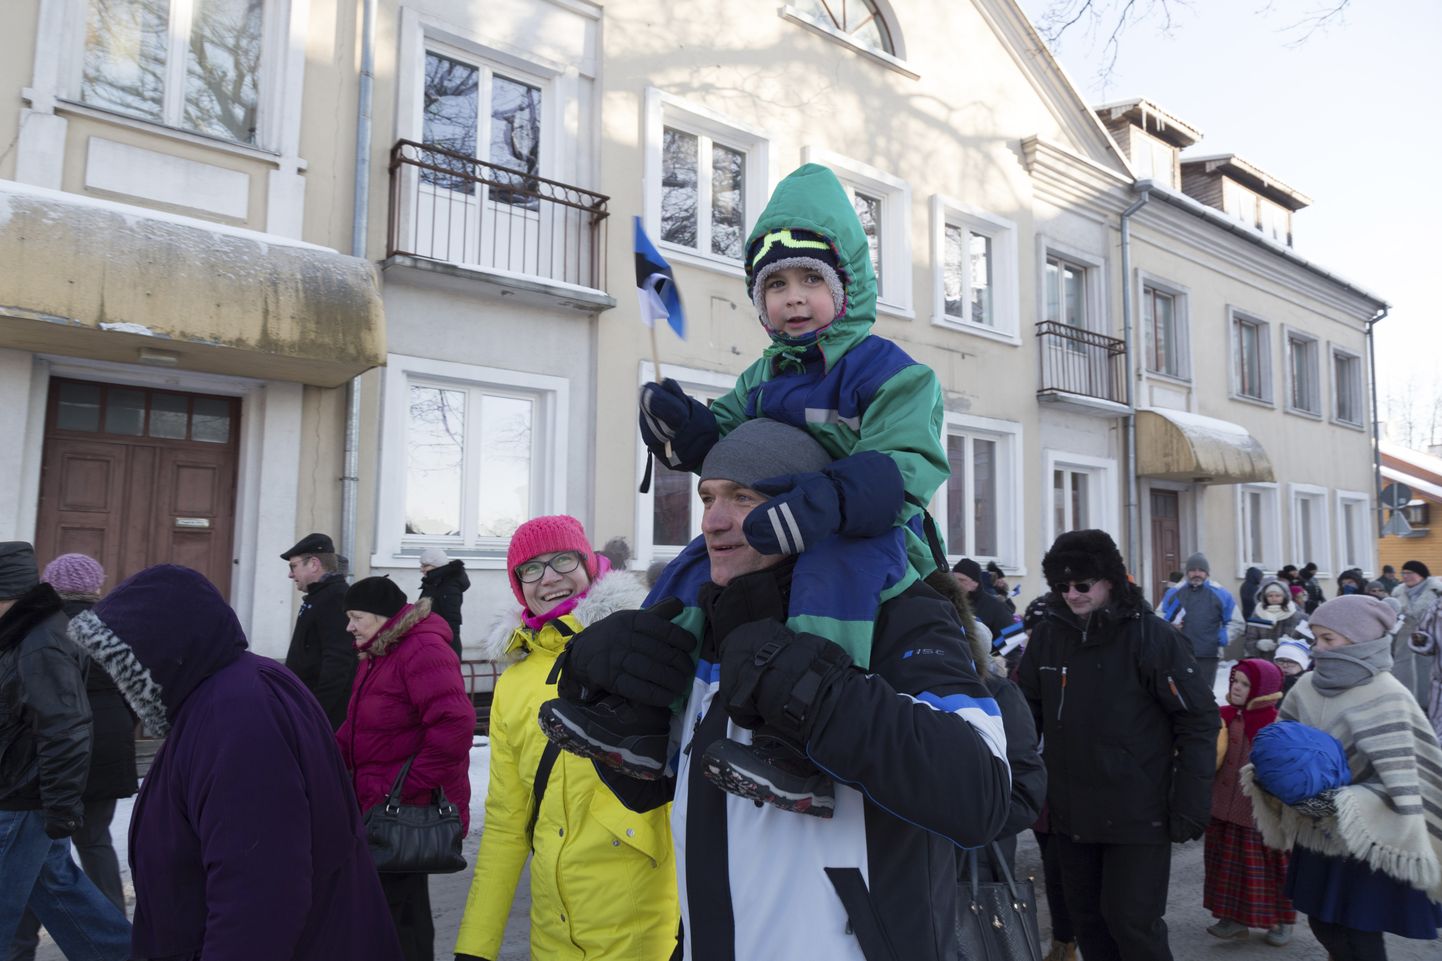 Sinimustvalge lipuga Artur Pramann isa Priidu kukil ning ema Reet kõrval kõndimas – nii läbis väikemees oma esimese Eesti sünnipäeva rongkäigu.